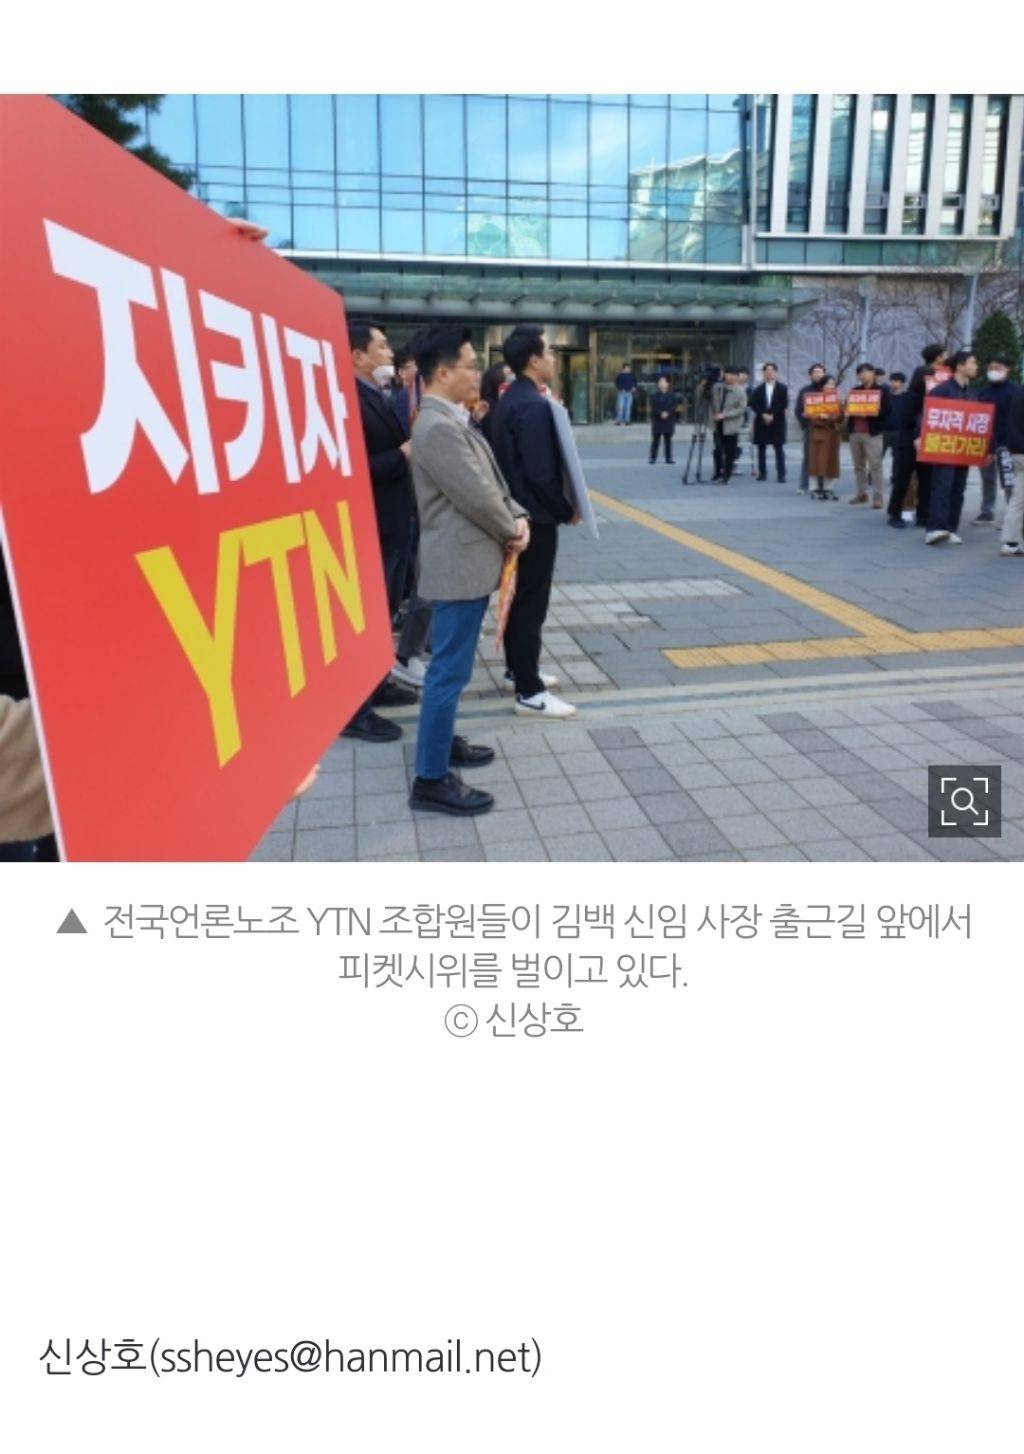 YTN노조 "여기가 어디라고 오나"... 김백 사장 취임에 항의 | 인스티즈